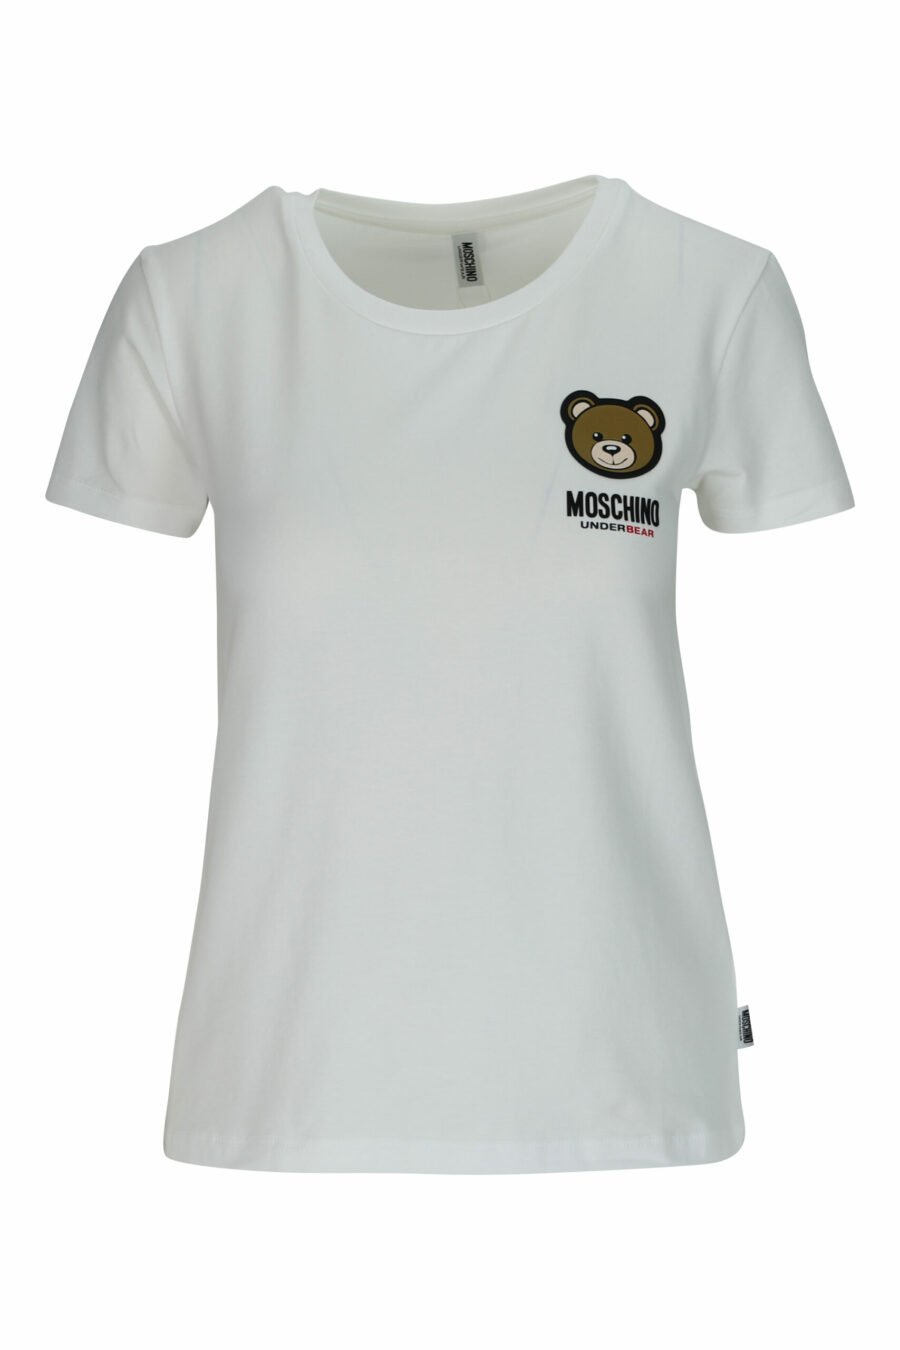 Weißes T-Shirt mit Bärenlogo "underbear" Aufnäher - 667113697321 skaliert